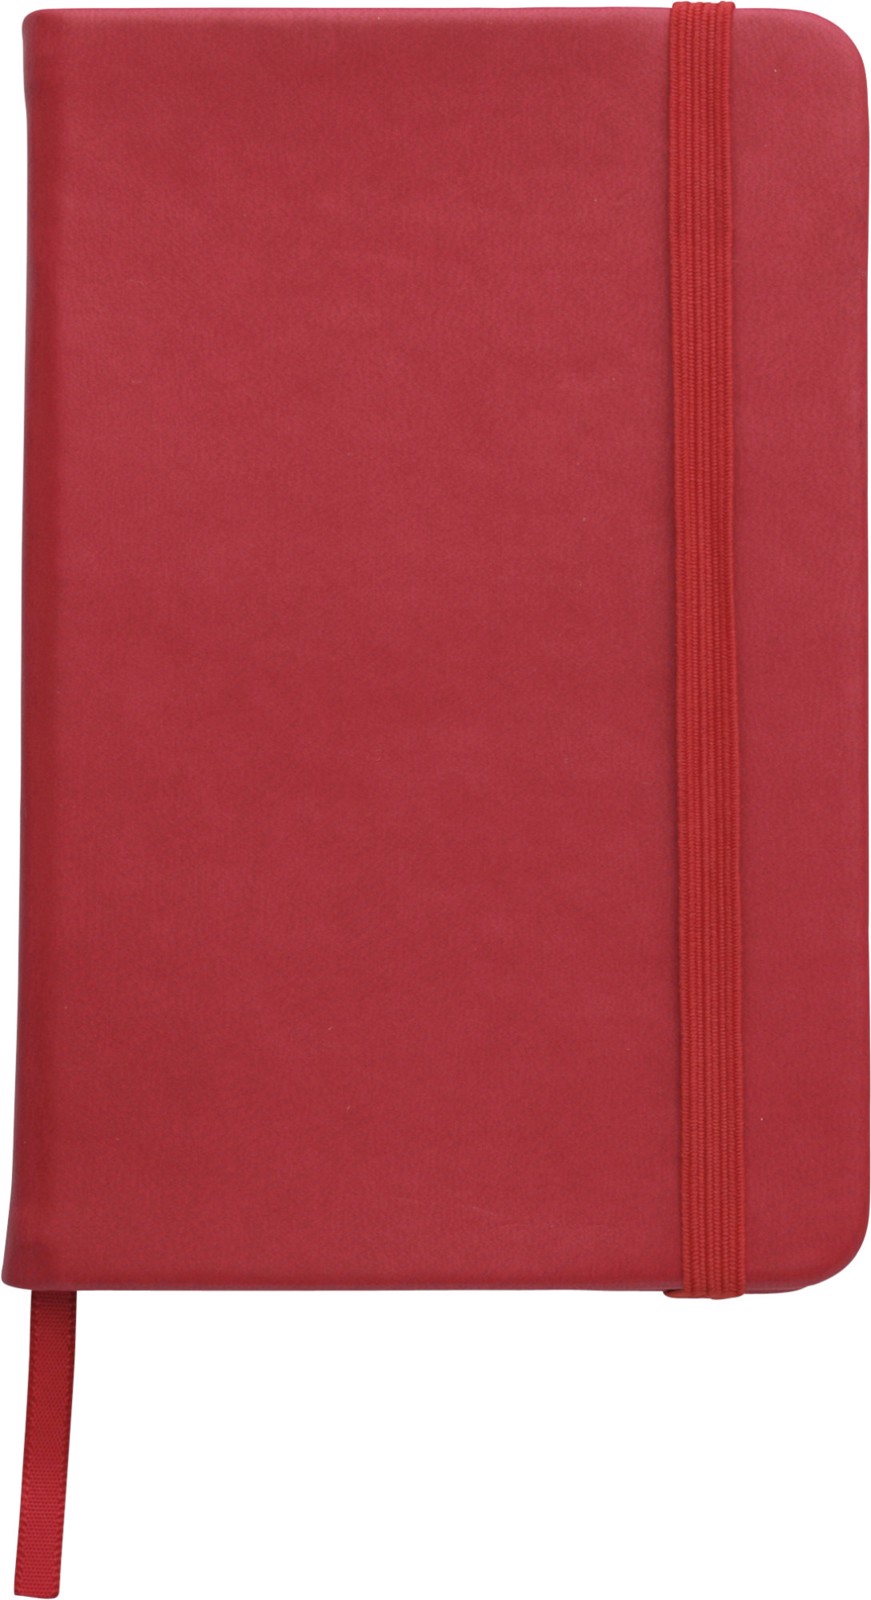 PU notebook - Red